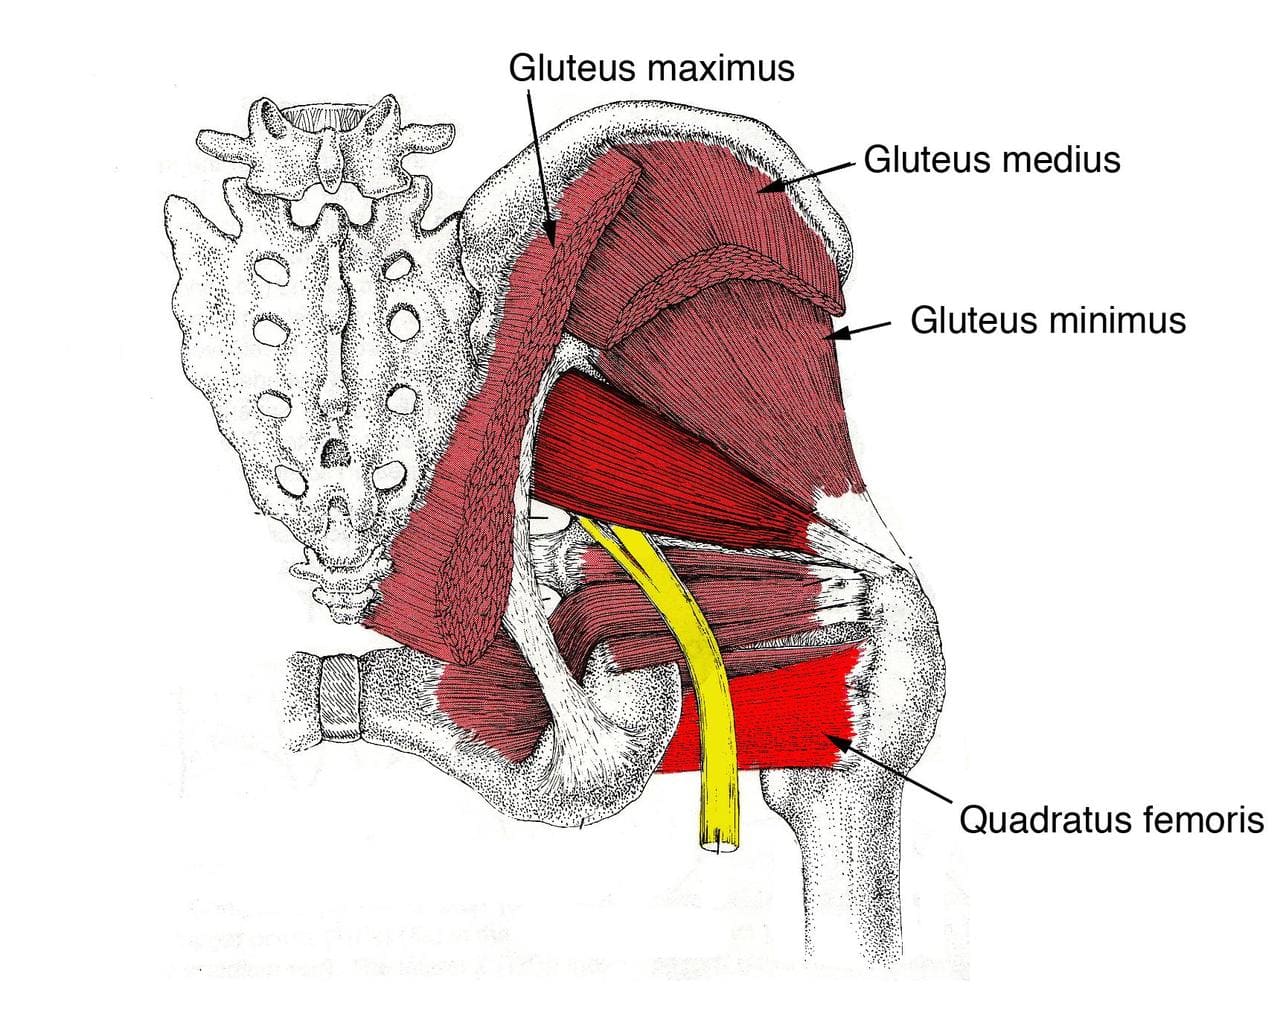 Quadratus femoris muscle